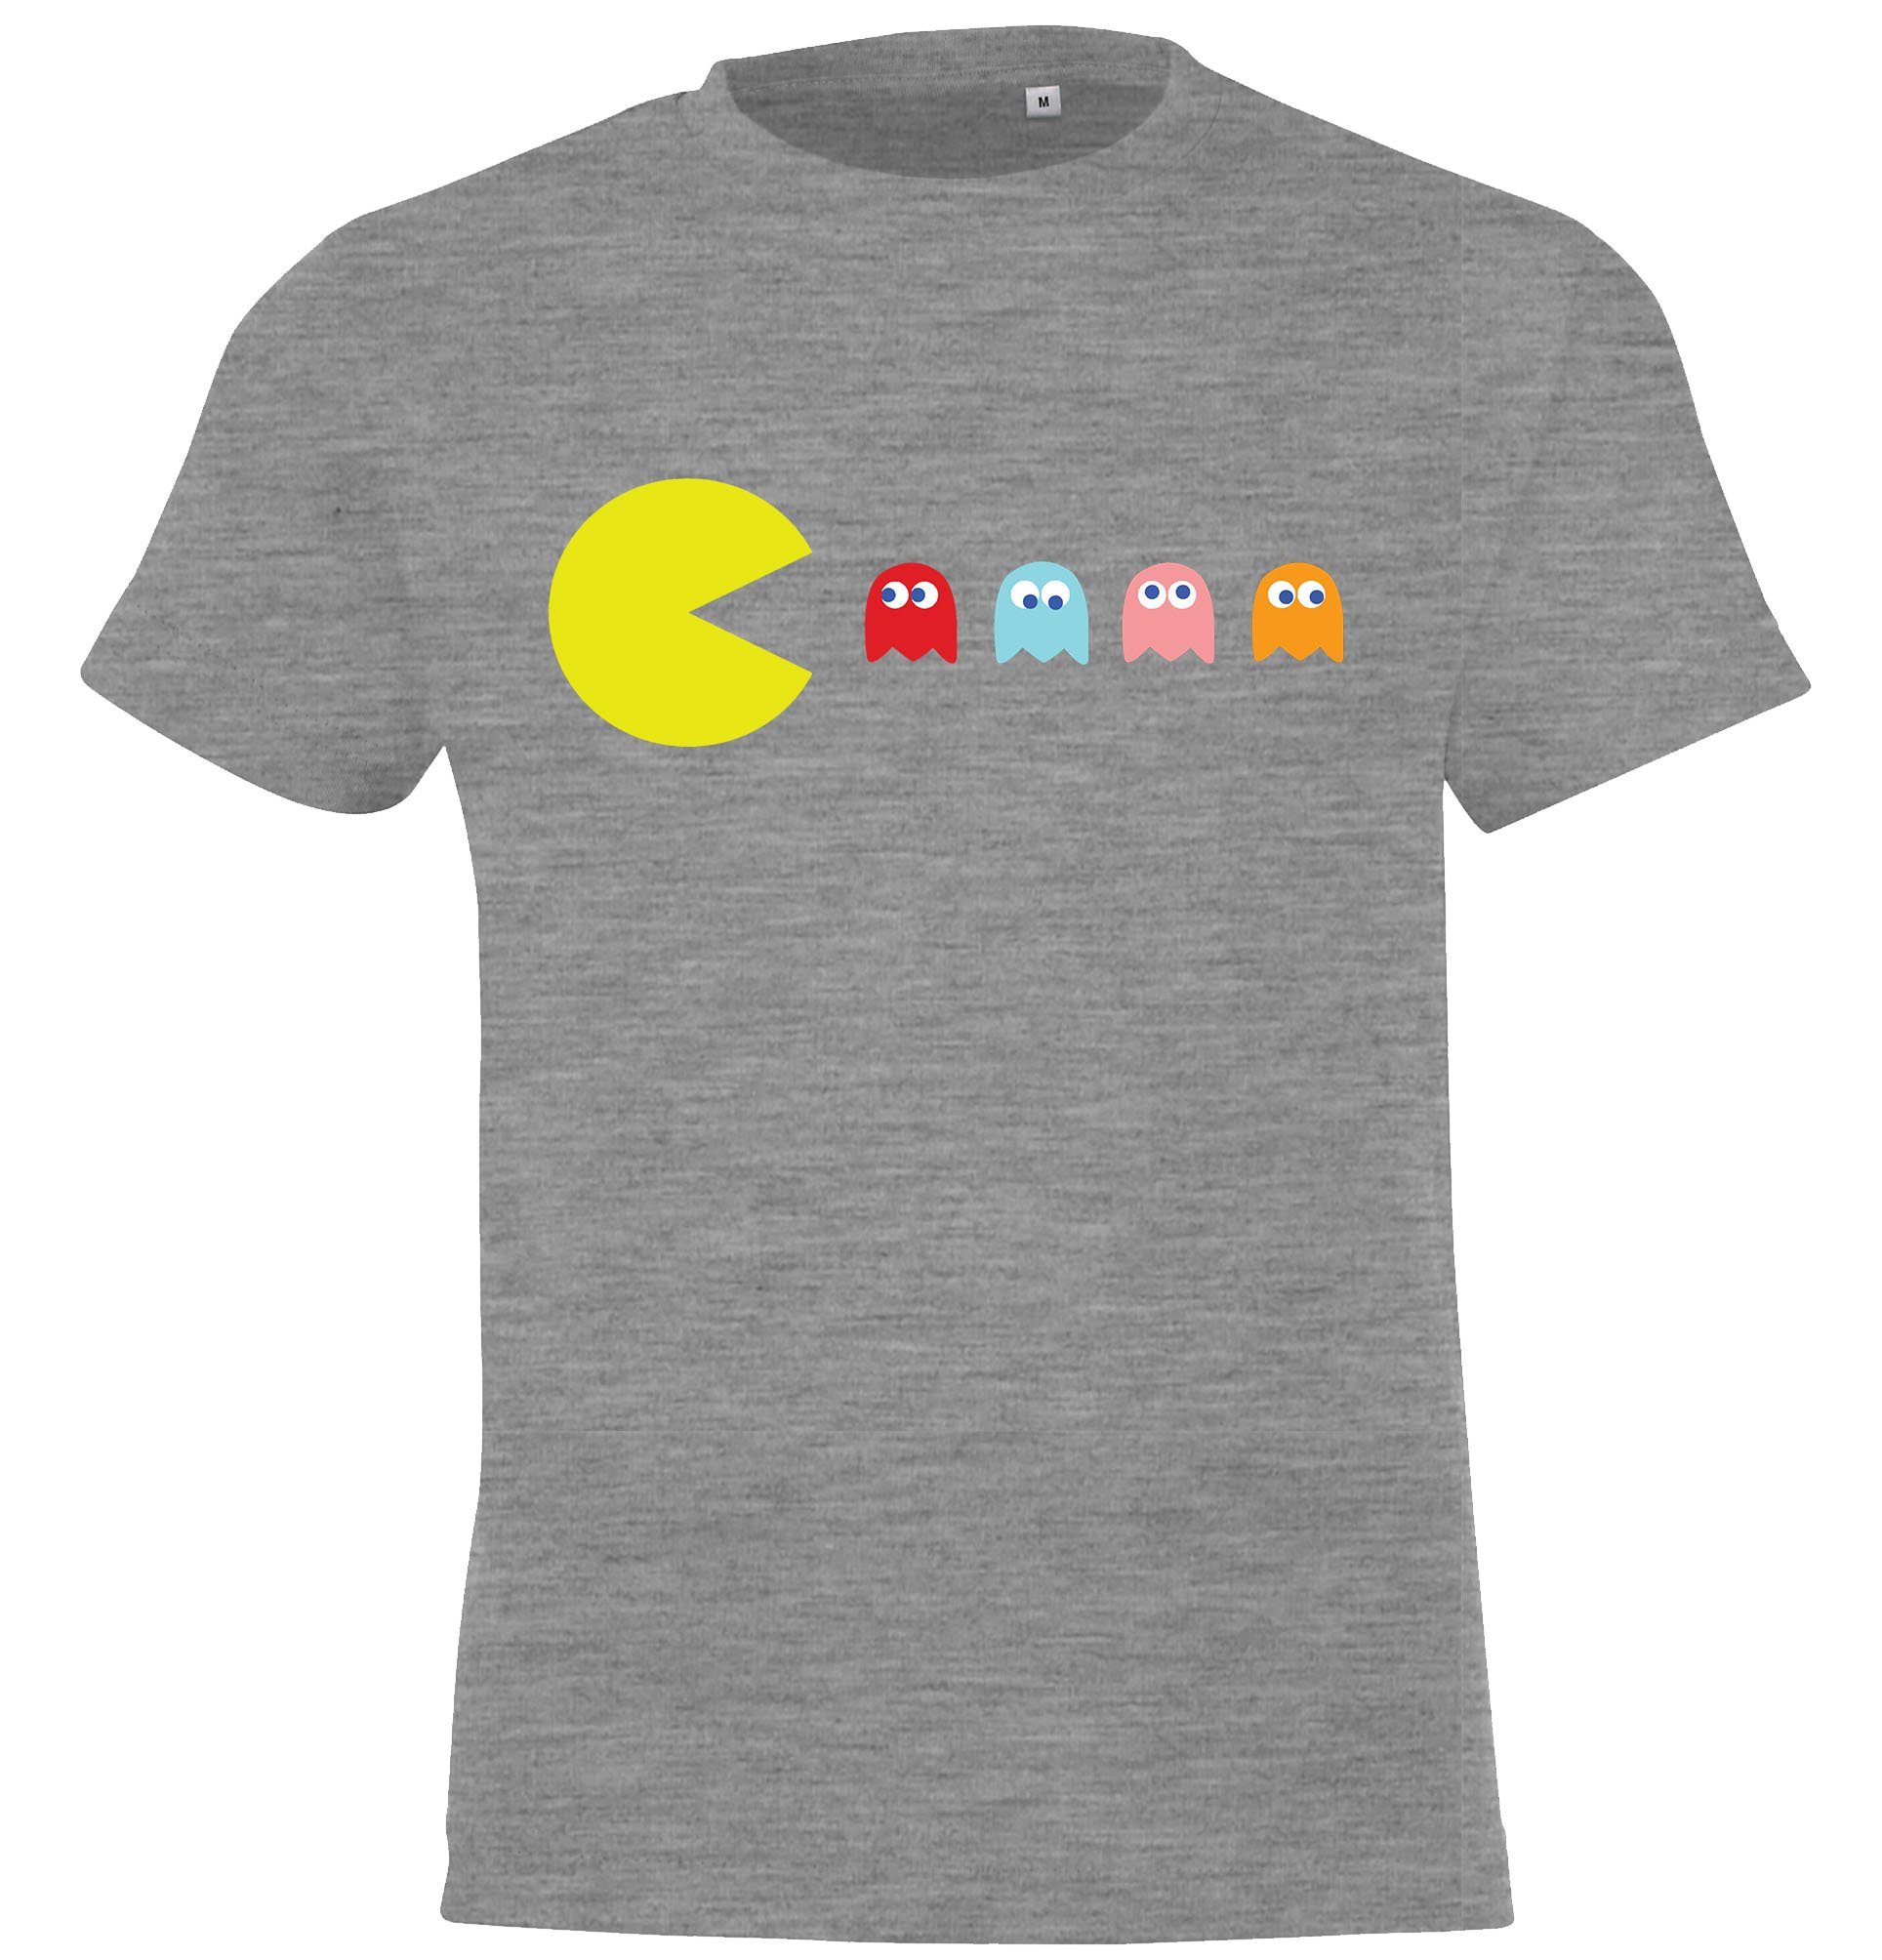 Youth Designz T-Shirt Vintage Gaming Kinder Shirt für Jungen und Mädchen mit trendigem Frontprint Grau